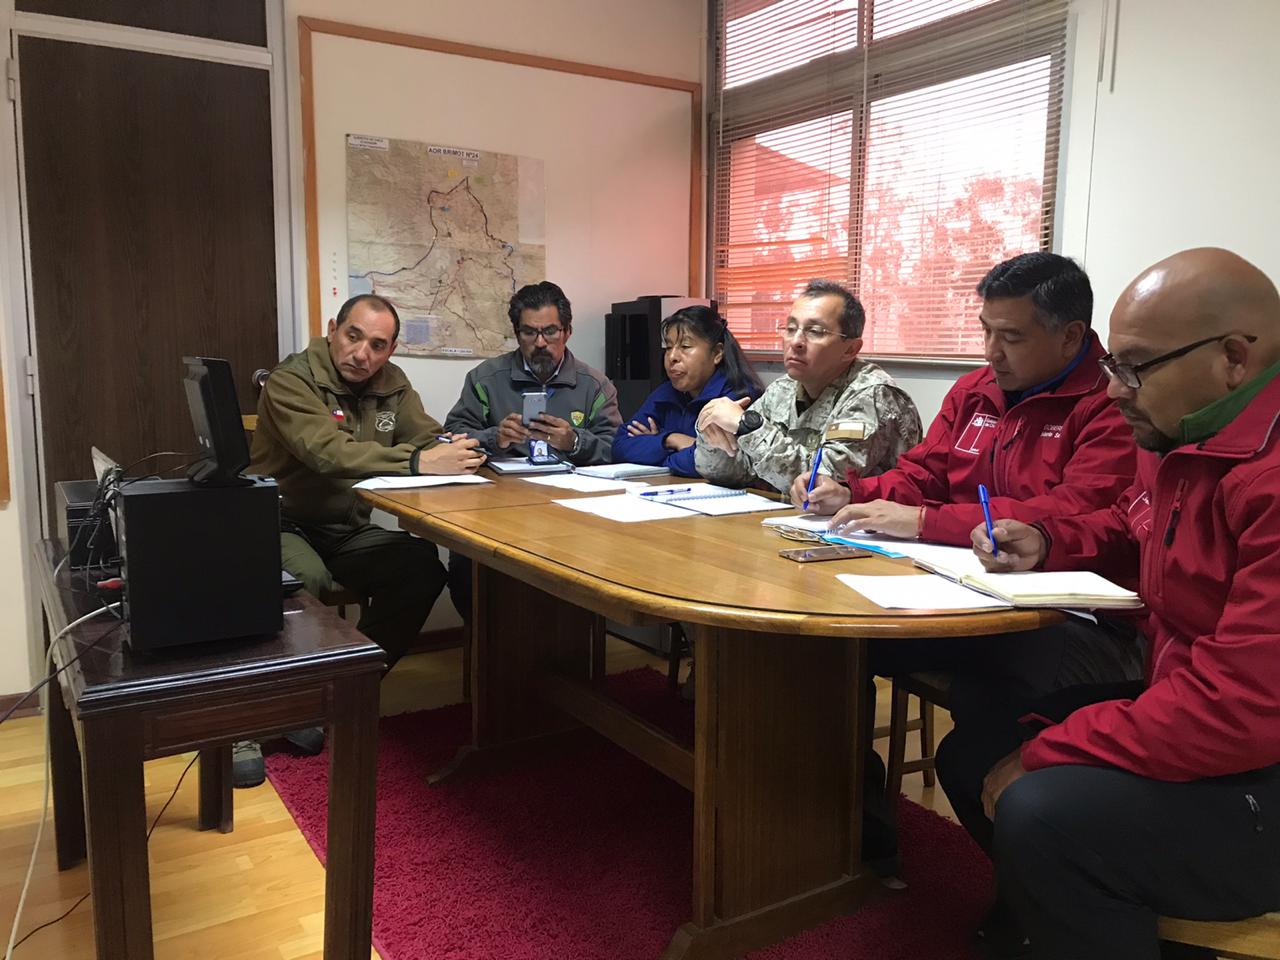 Municipio participó en reunión de coordinación con autoridades por Coronavirus